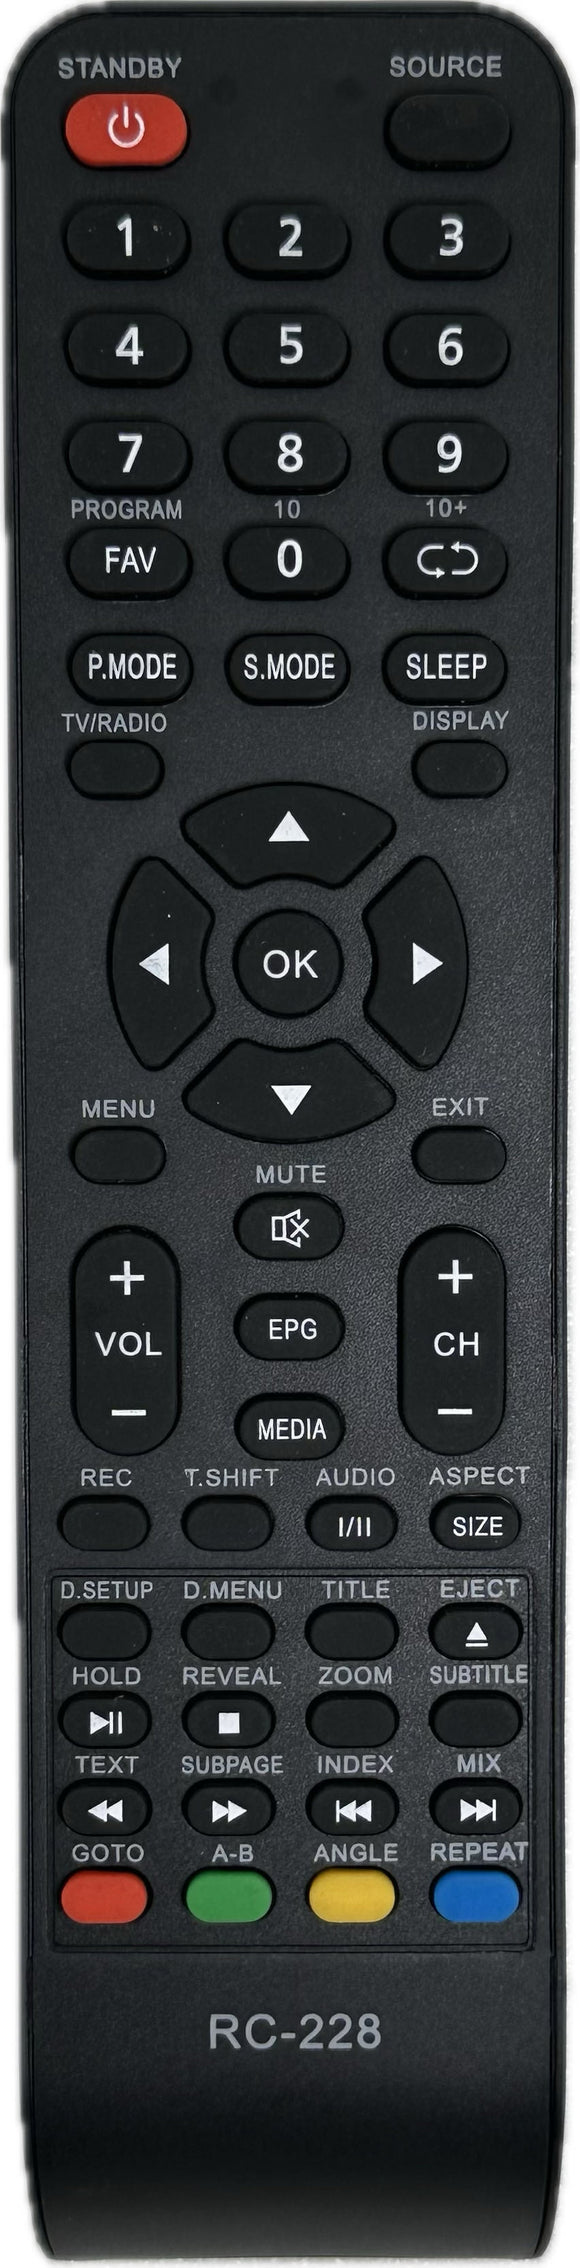 SEIKI SC2400FDV TV  Replacement Remote Control